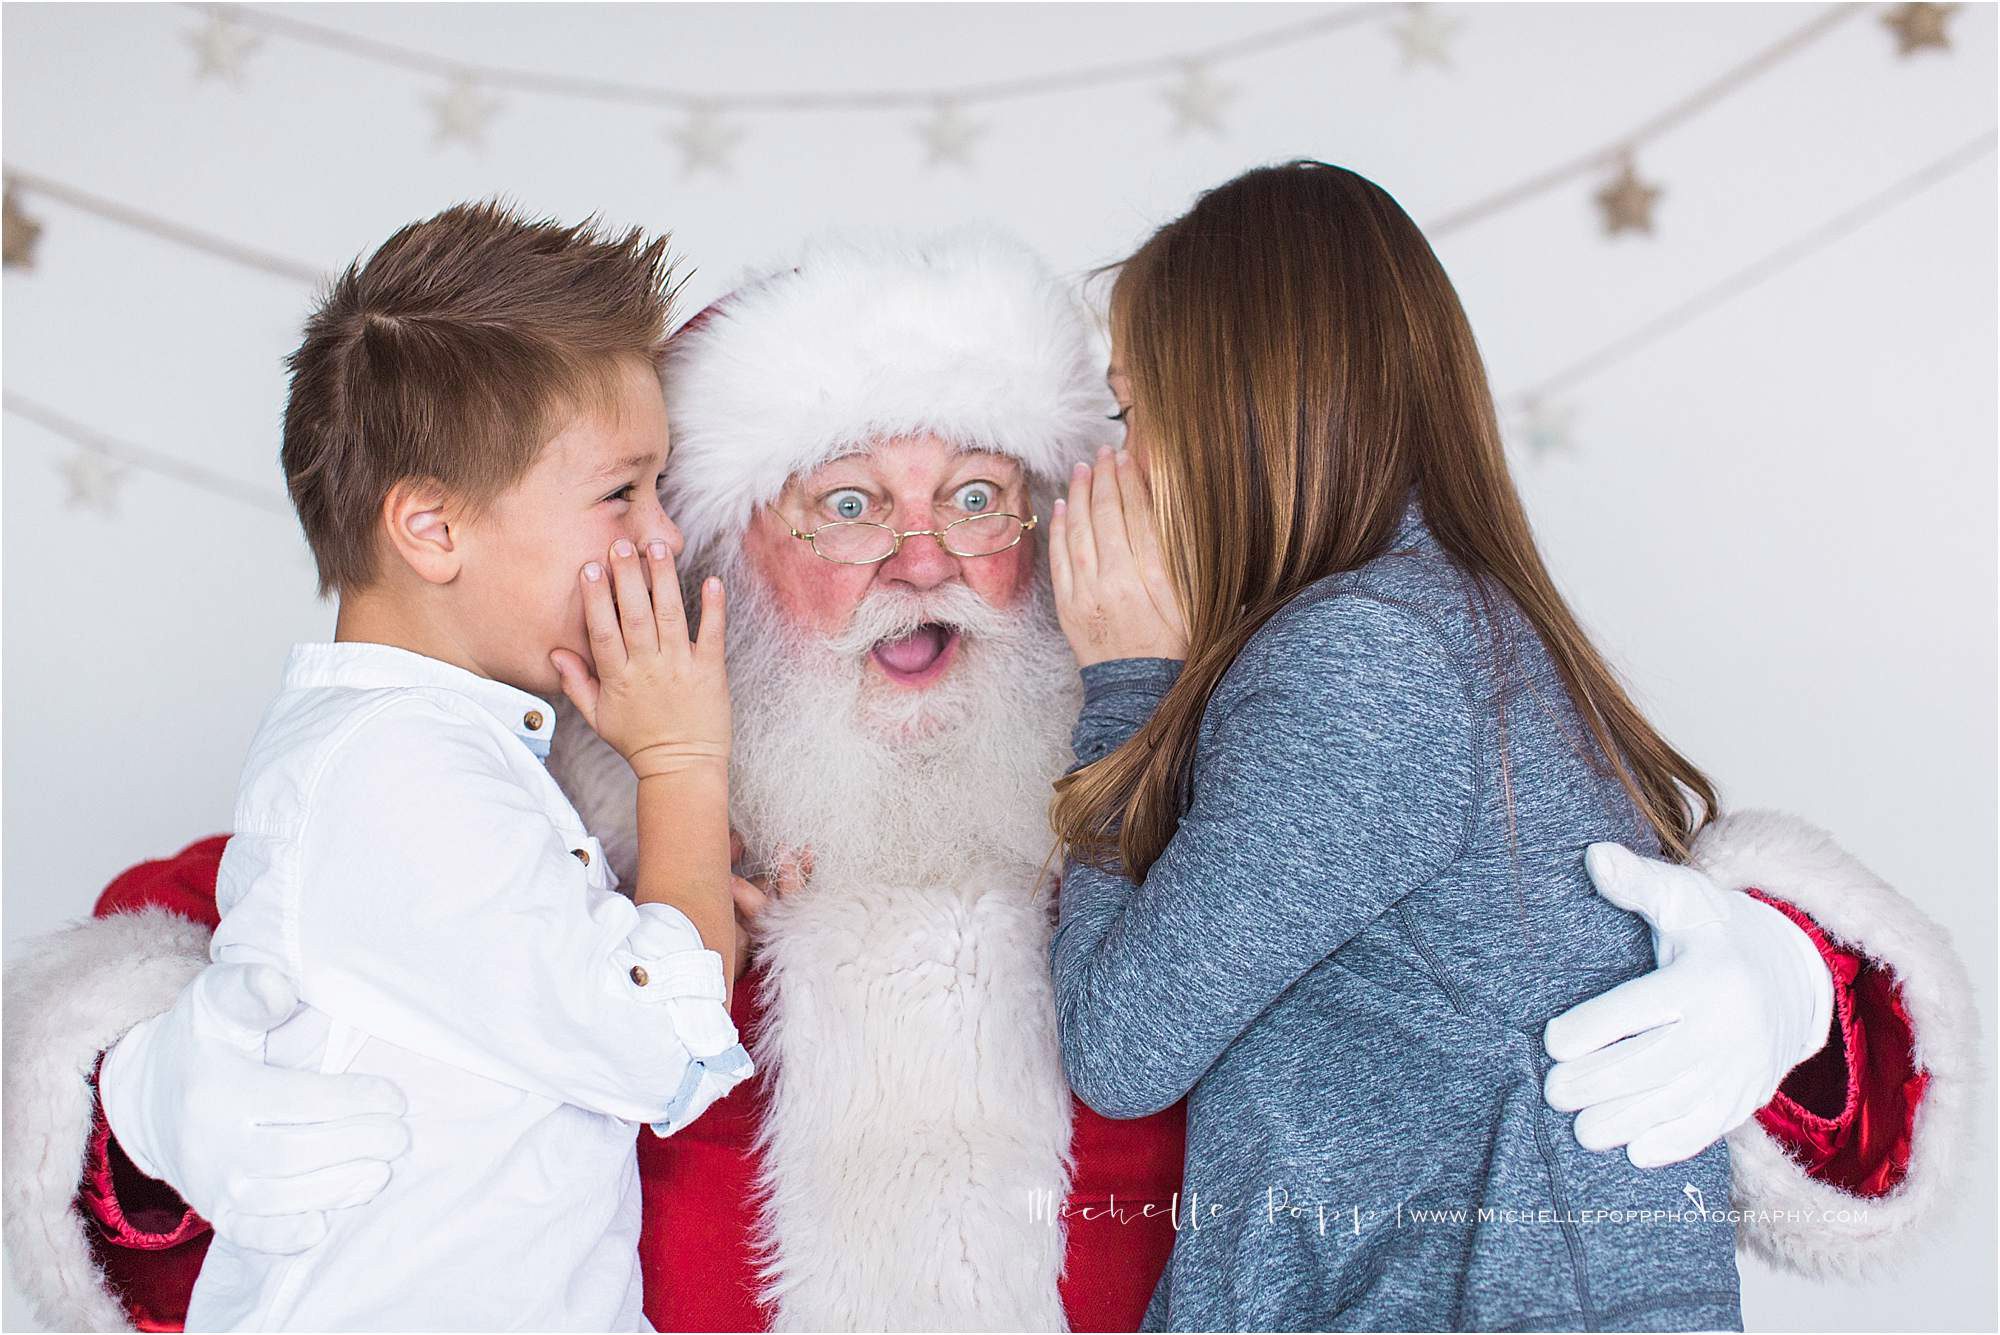 kids telling Santa a secret